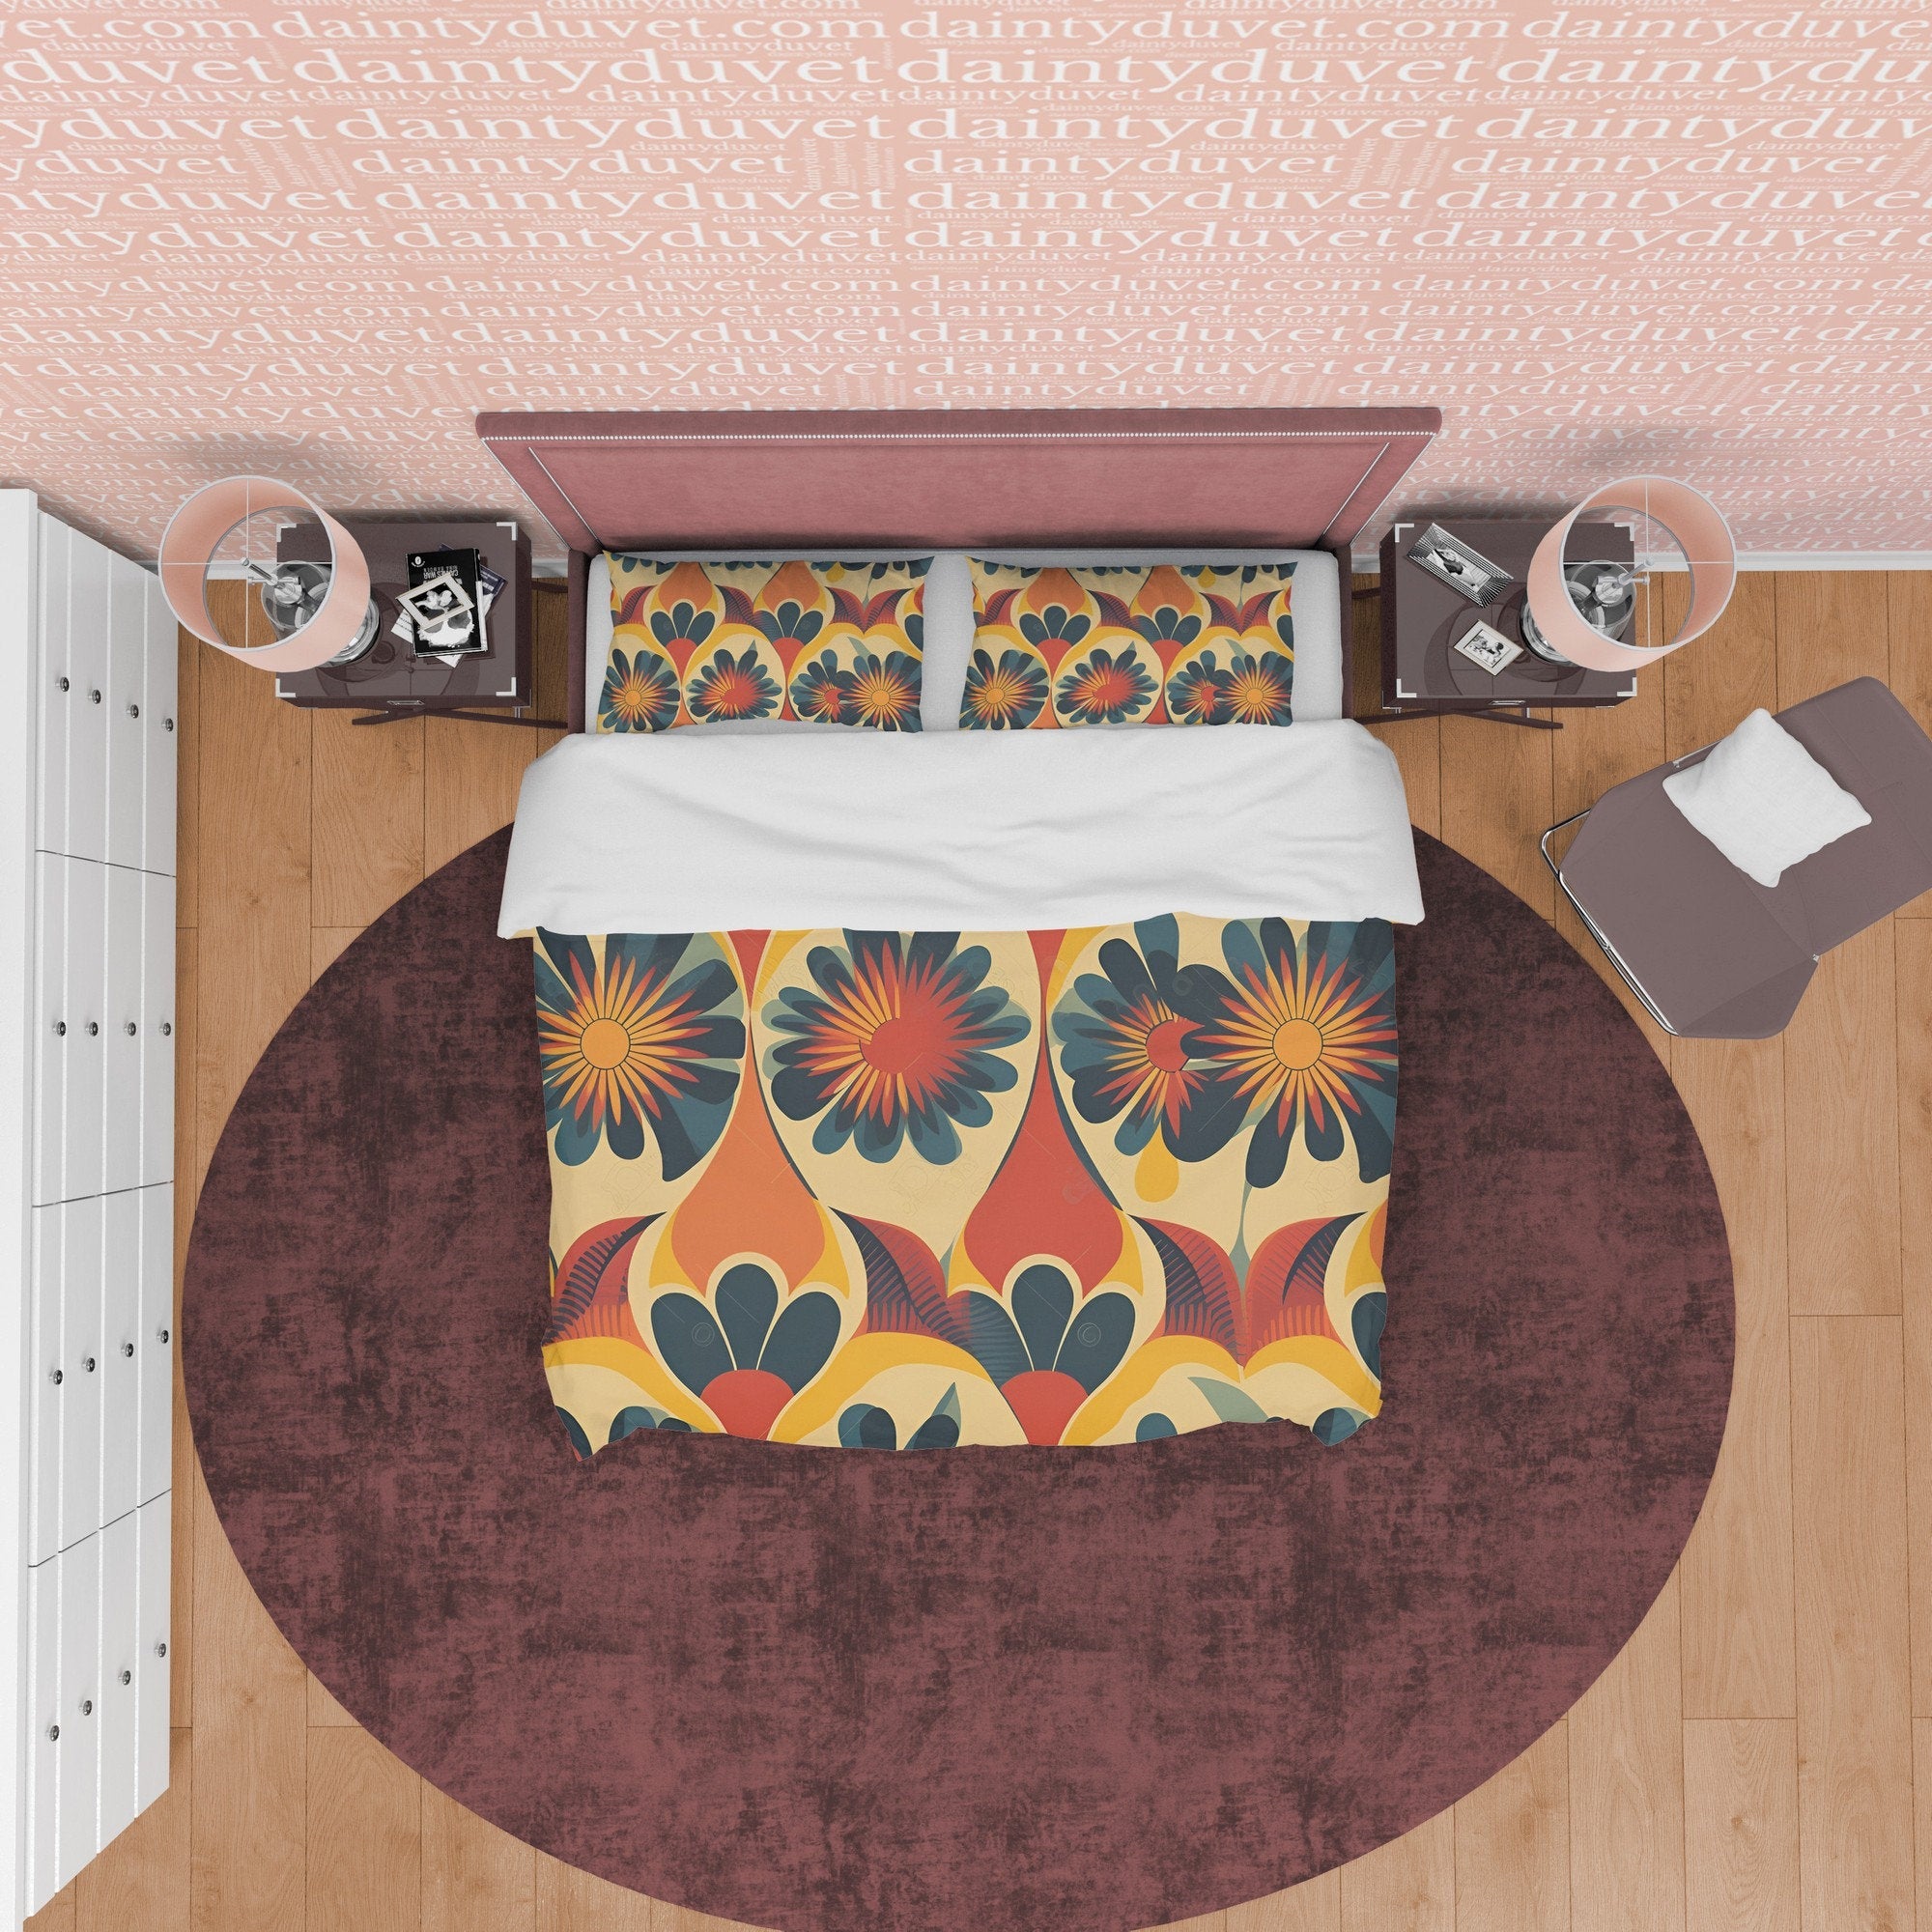 Floral Rustic Retro Bedding Set, Vintage Summer Duvet Cover, Boho Orange Brown Flower Quilt Cover, 70's Pattern Bed Cover, Zipper Bedding